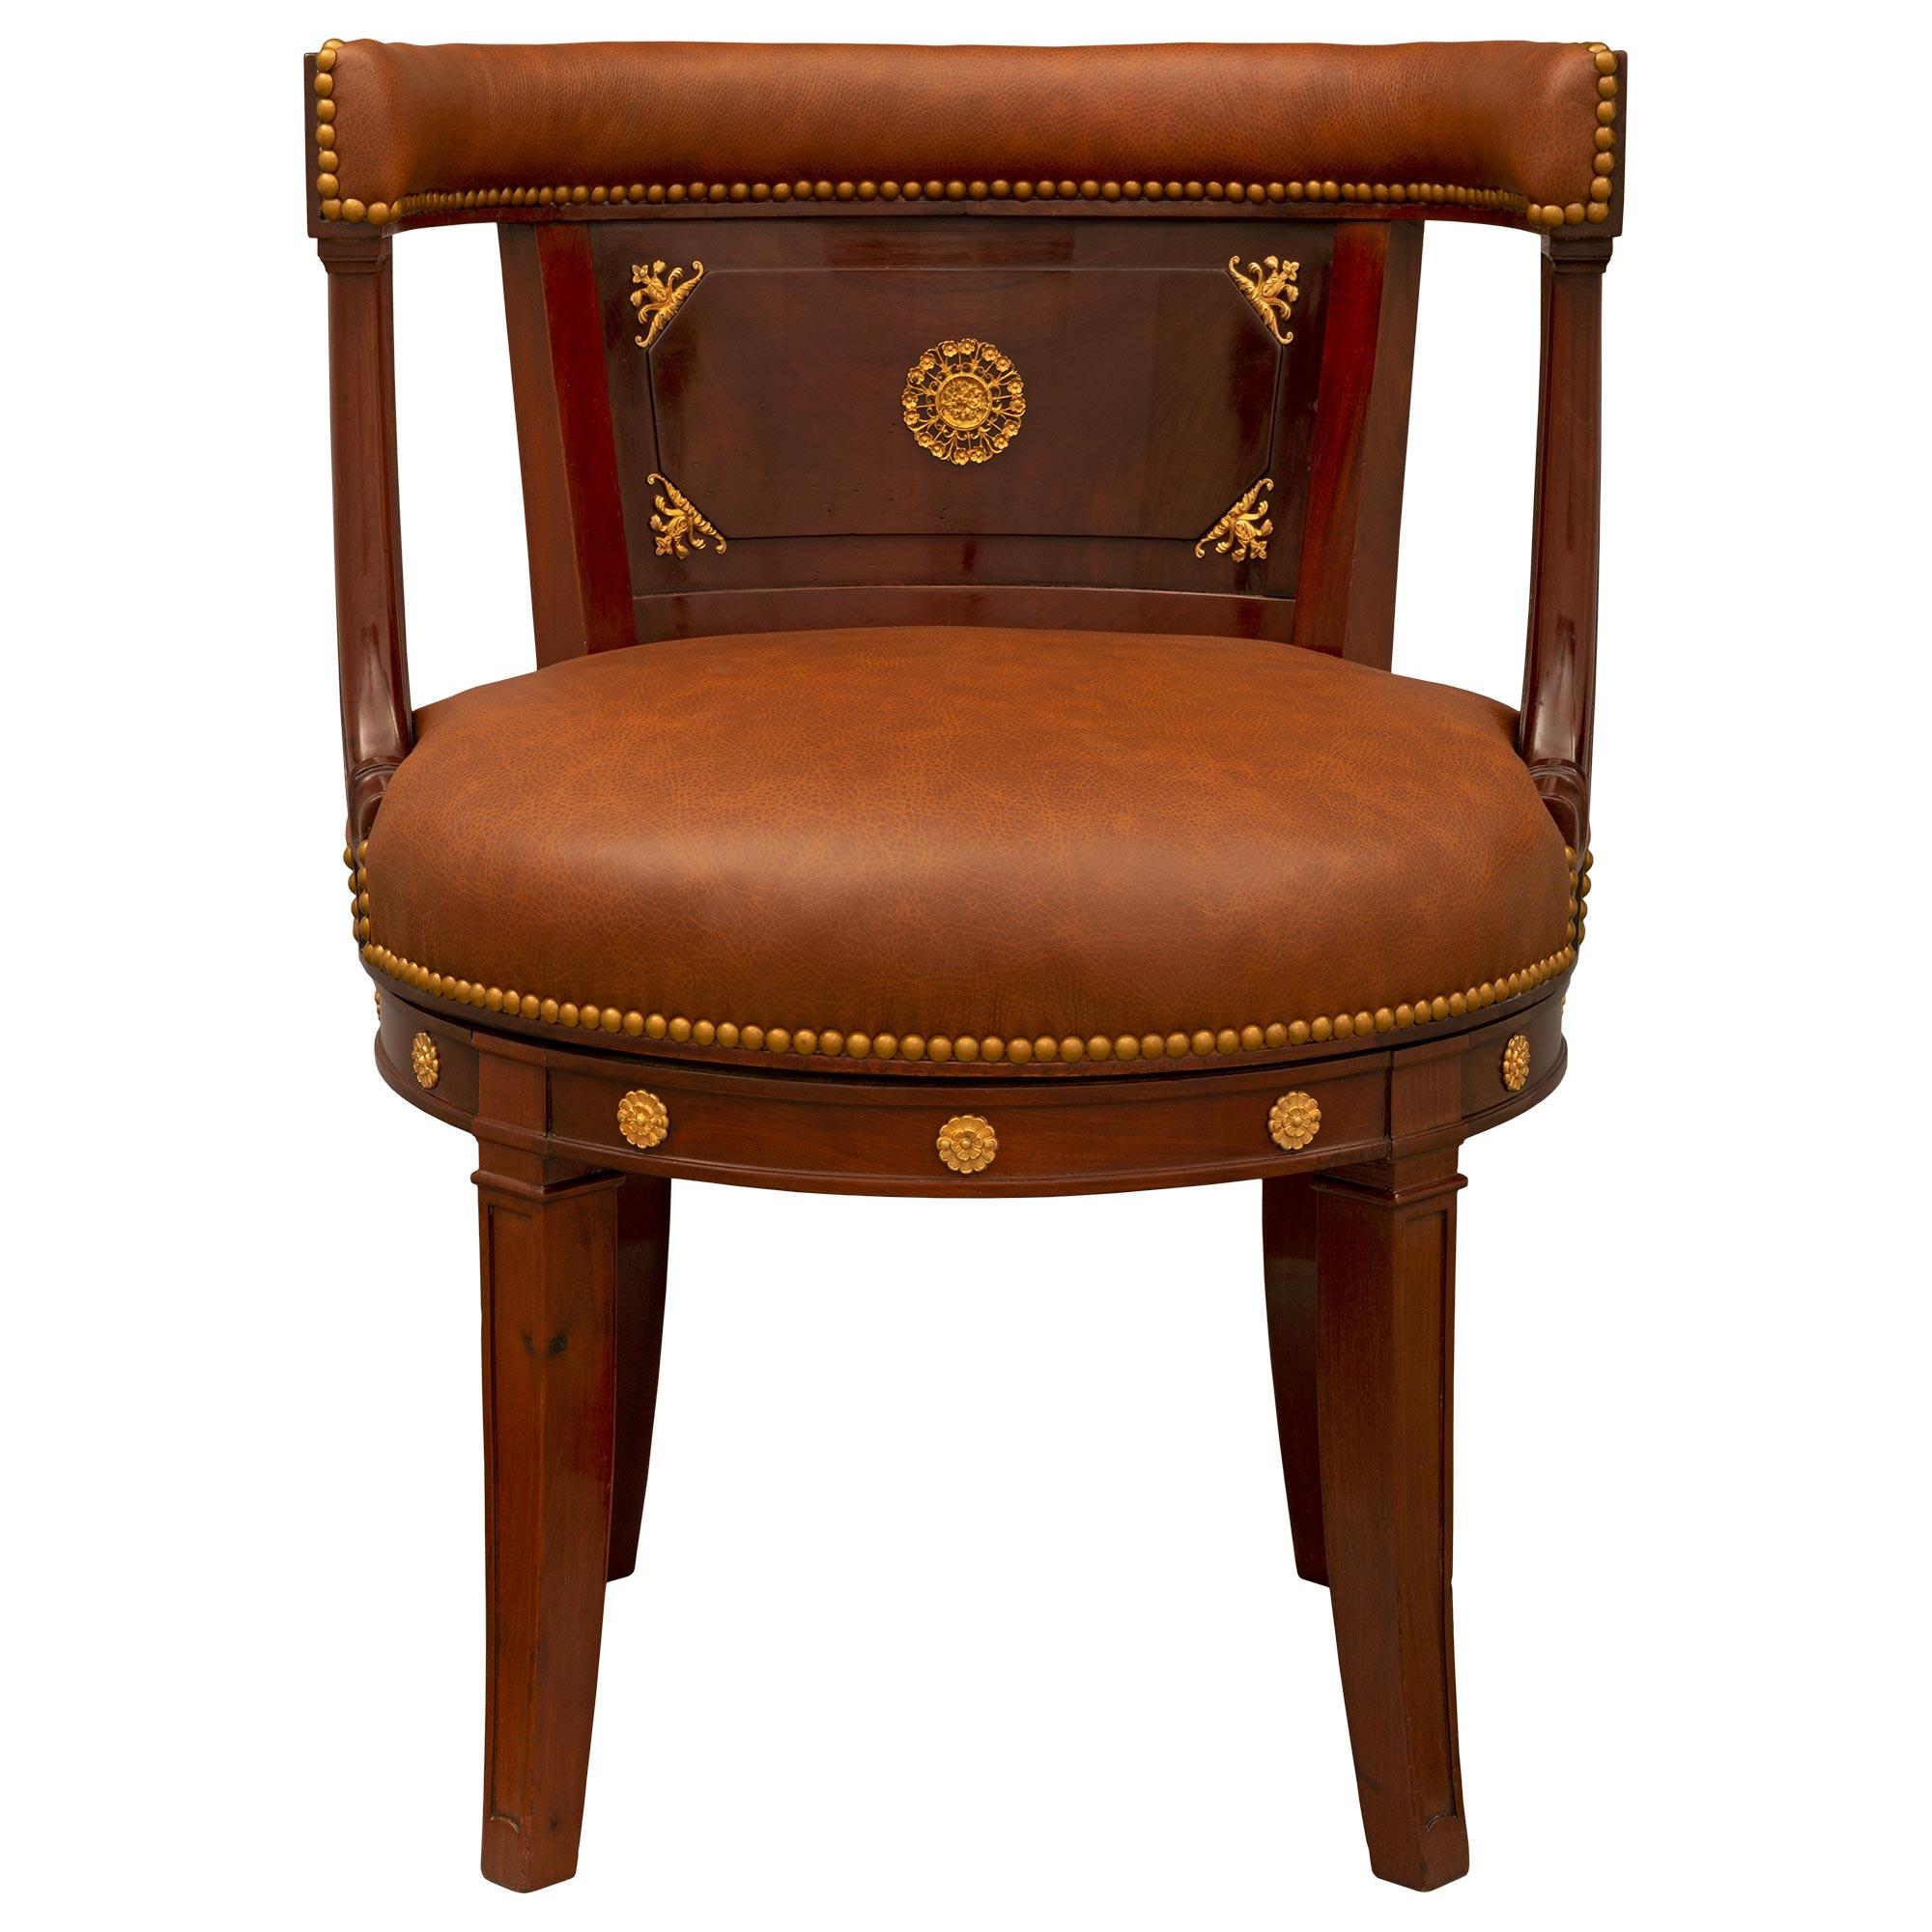 Un impressionnant et unique fauteuil de bureau de style Empire français du 19ème siècle en acajou et bronze doré. Le fauteuil est surélevé par de beaux pieds carrés légèrement courbés avec des motifs en creux finement sculptés et de belles rosettes